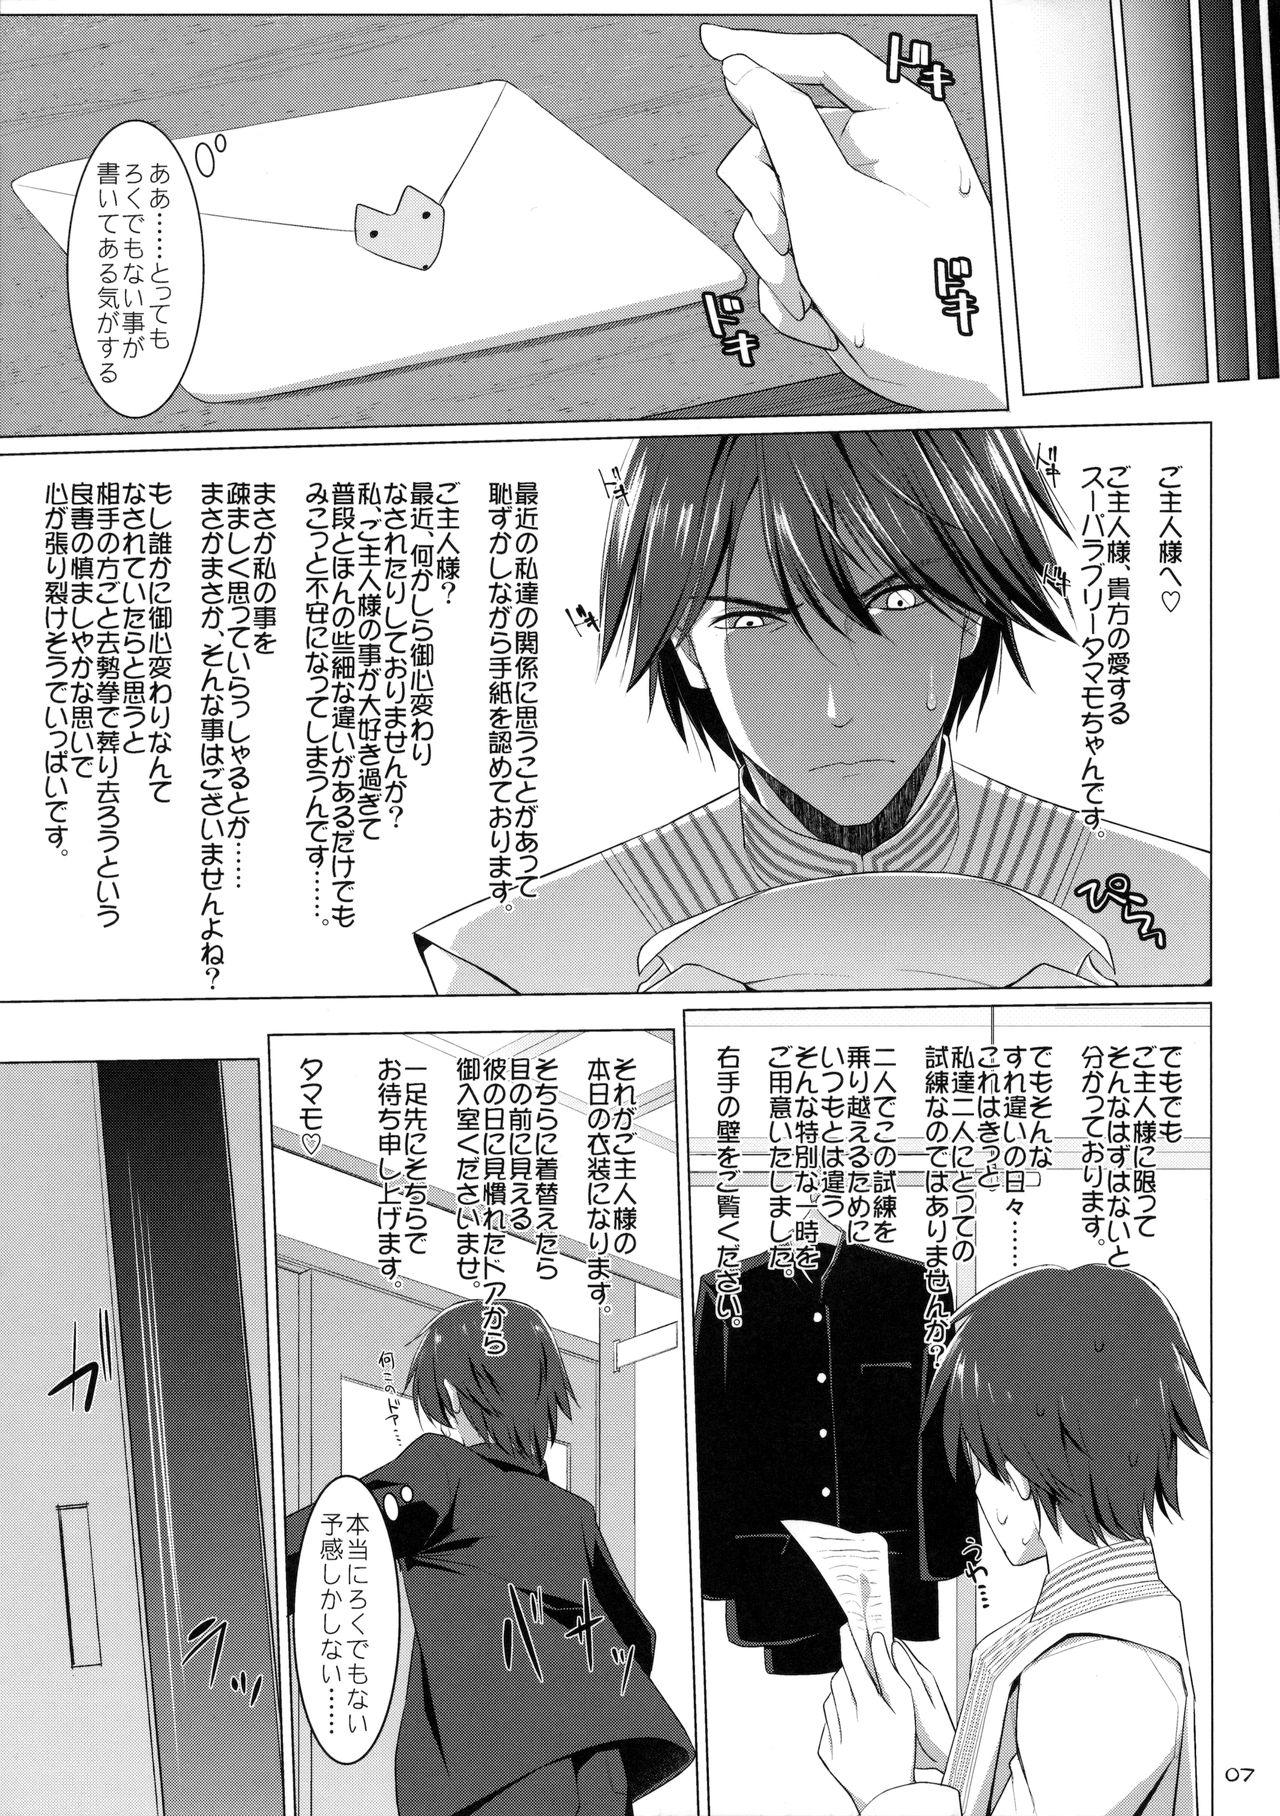 Class Goshujin-sama Oppai desu yo!! 5 - Fate extra Tease - Page 6